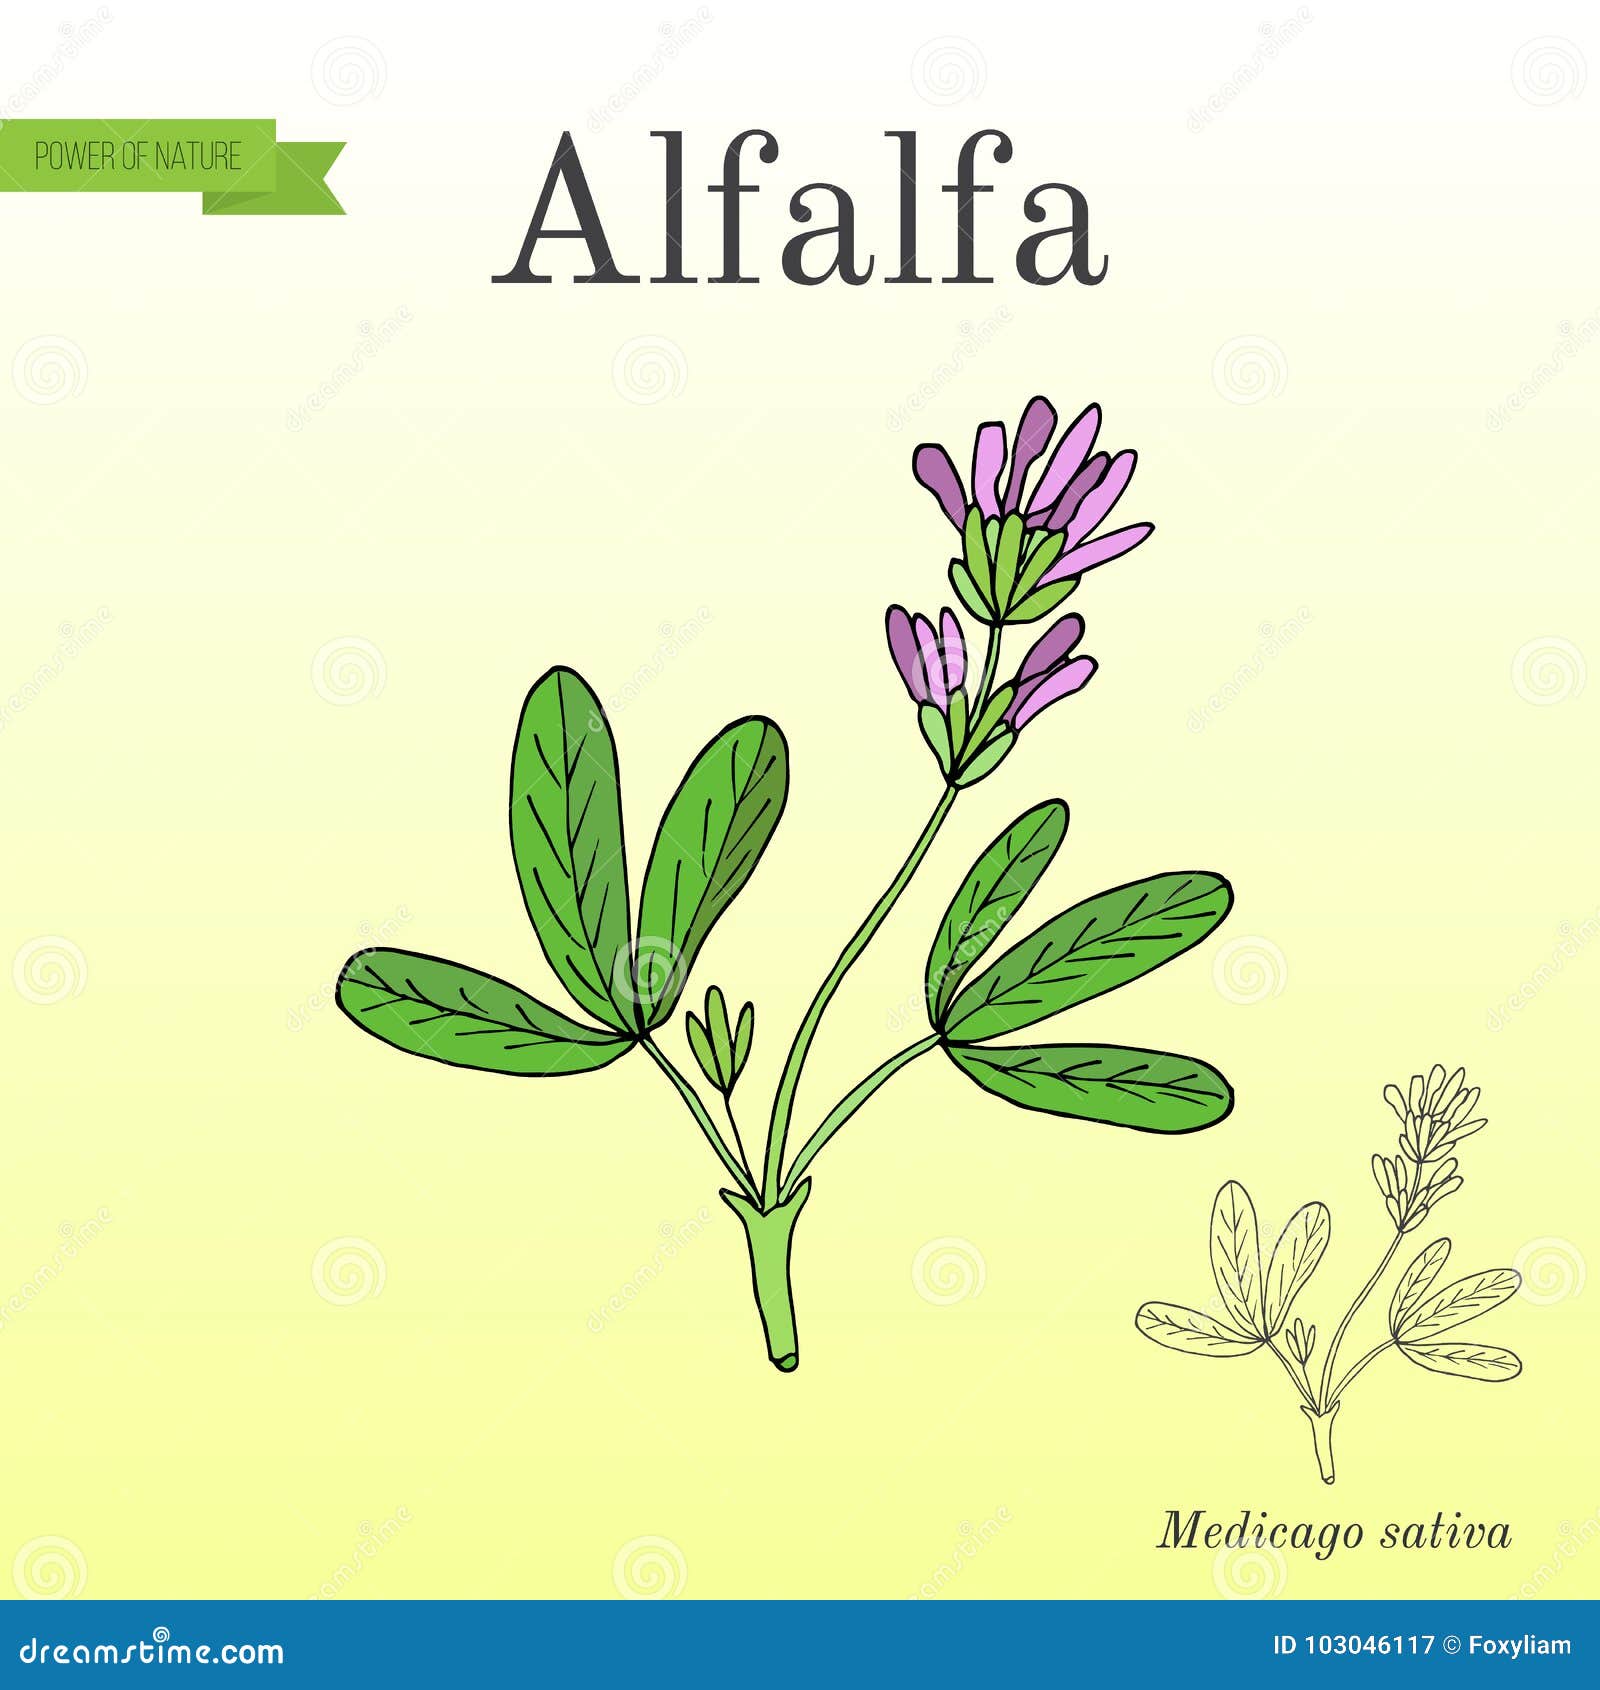 alfalfa medicago sativa .